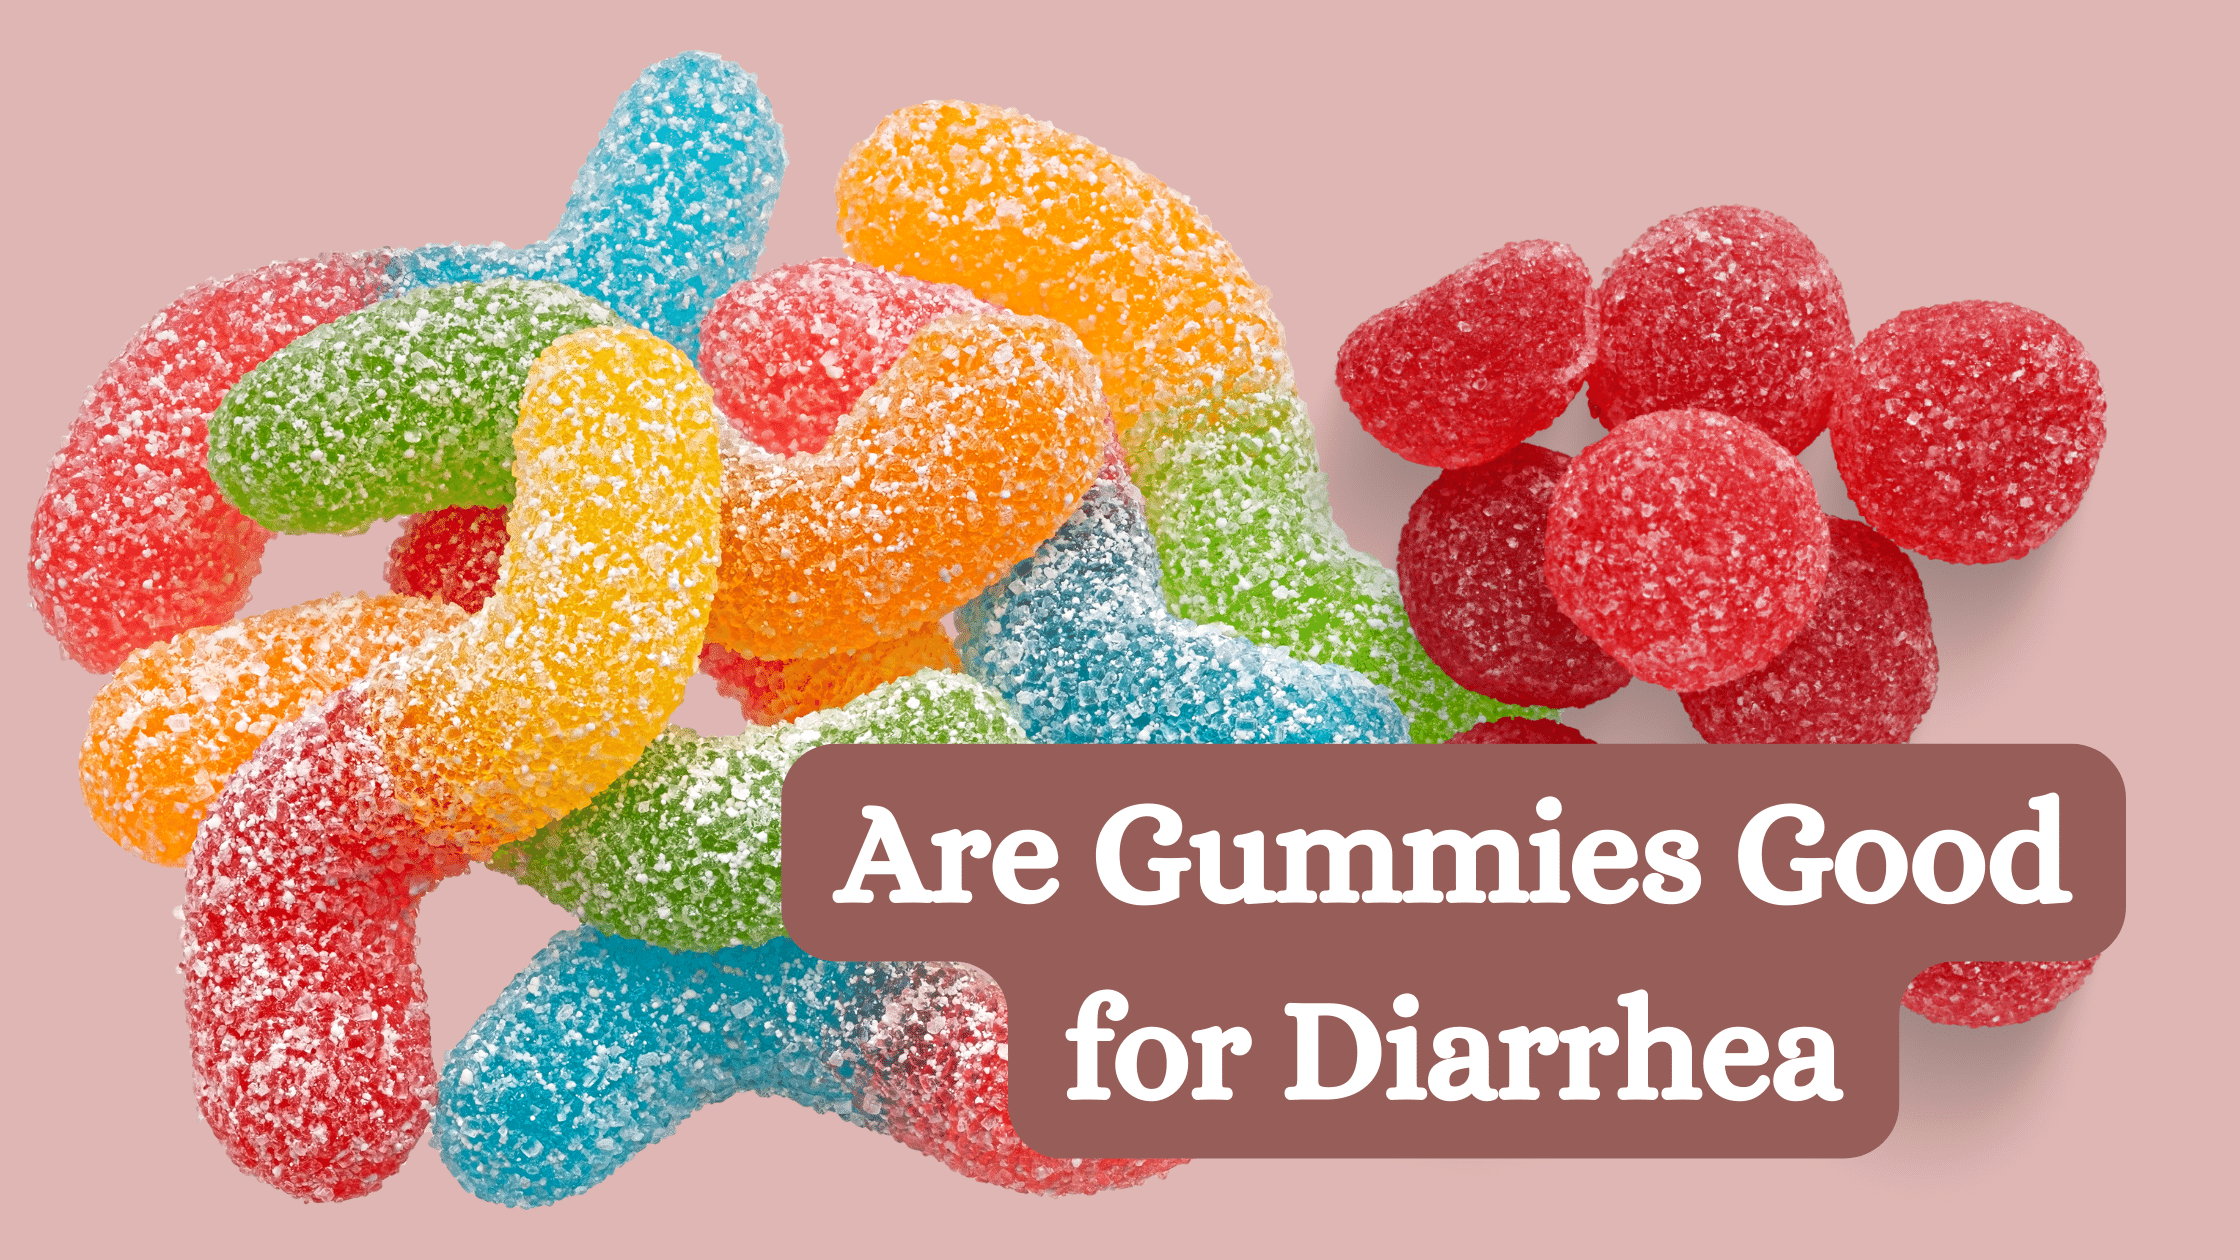 Gummies Good for Diarrhea